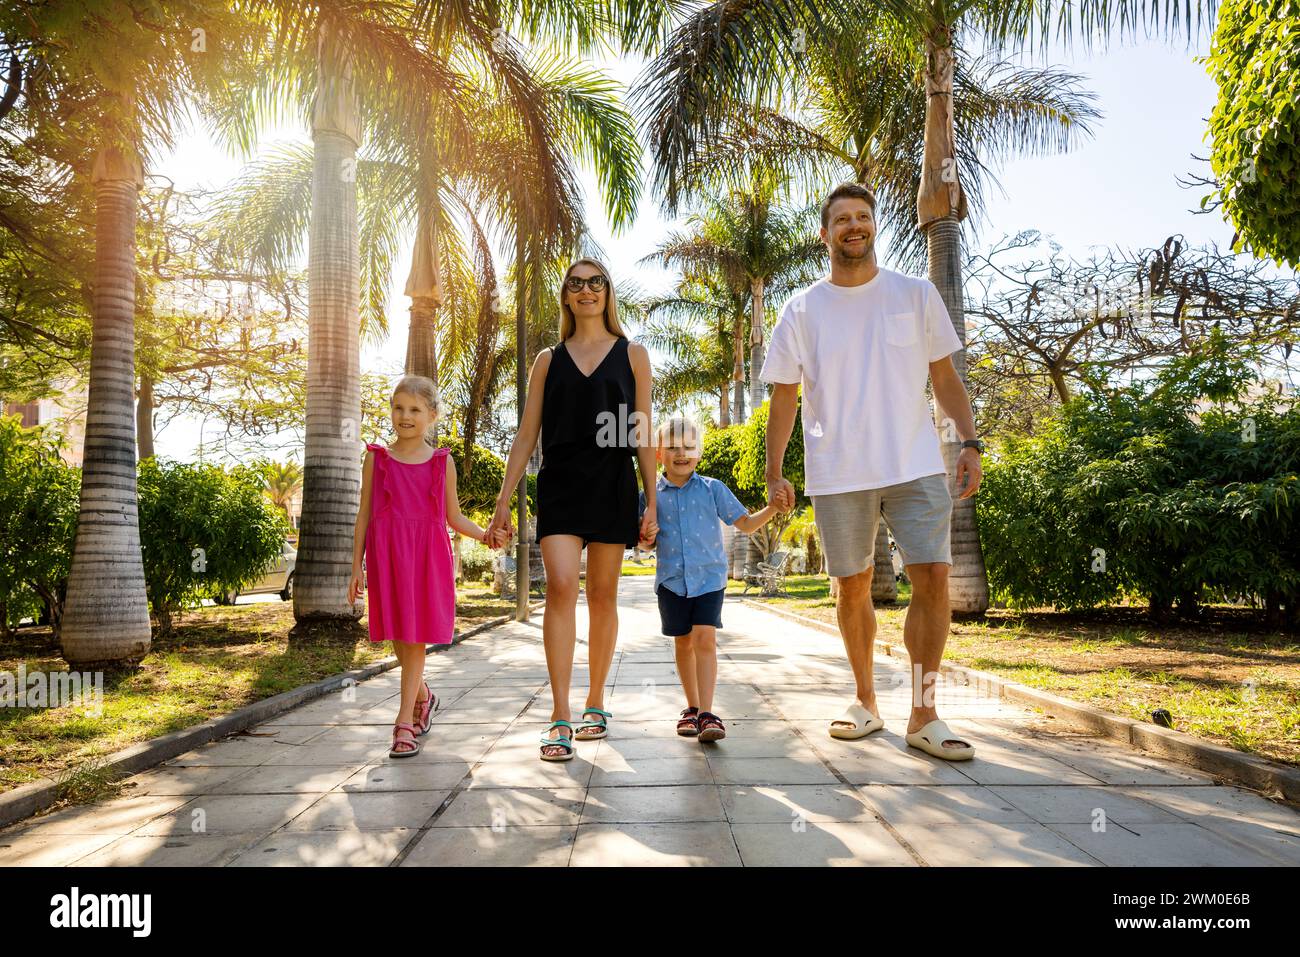 Famille heureuse avec des enfants marchant dans les mains dans une ruelle dans un parc de palmiers à Tenerife, Espagne. vacances d'été Banque D'Images